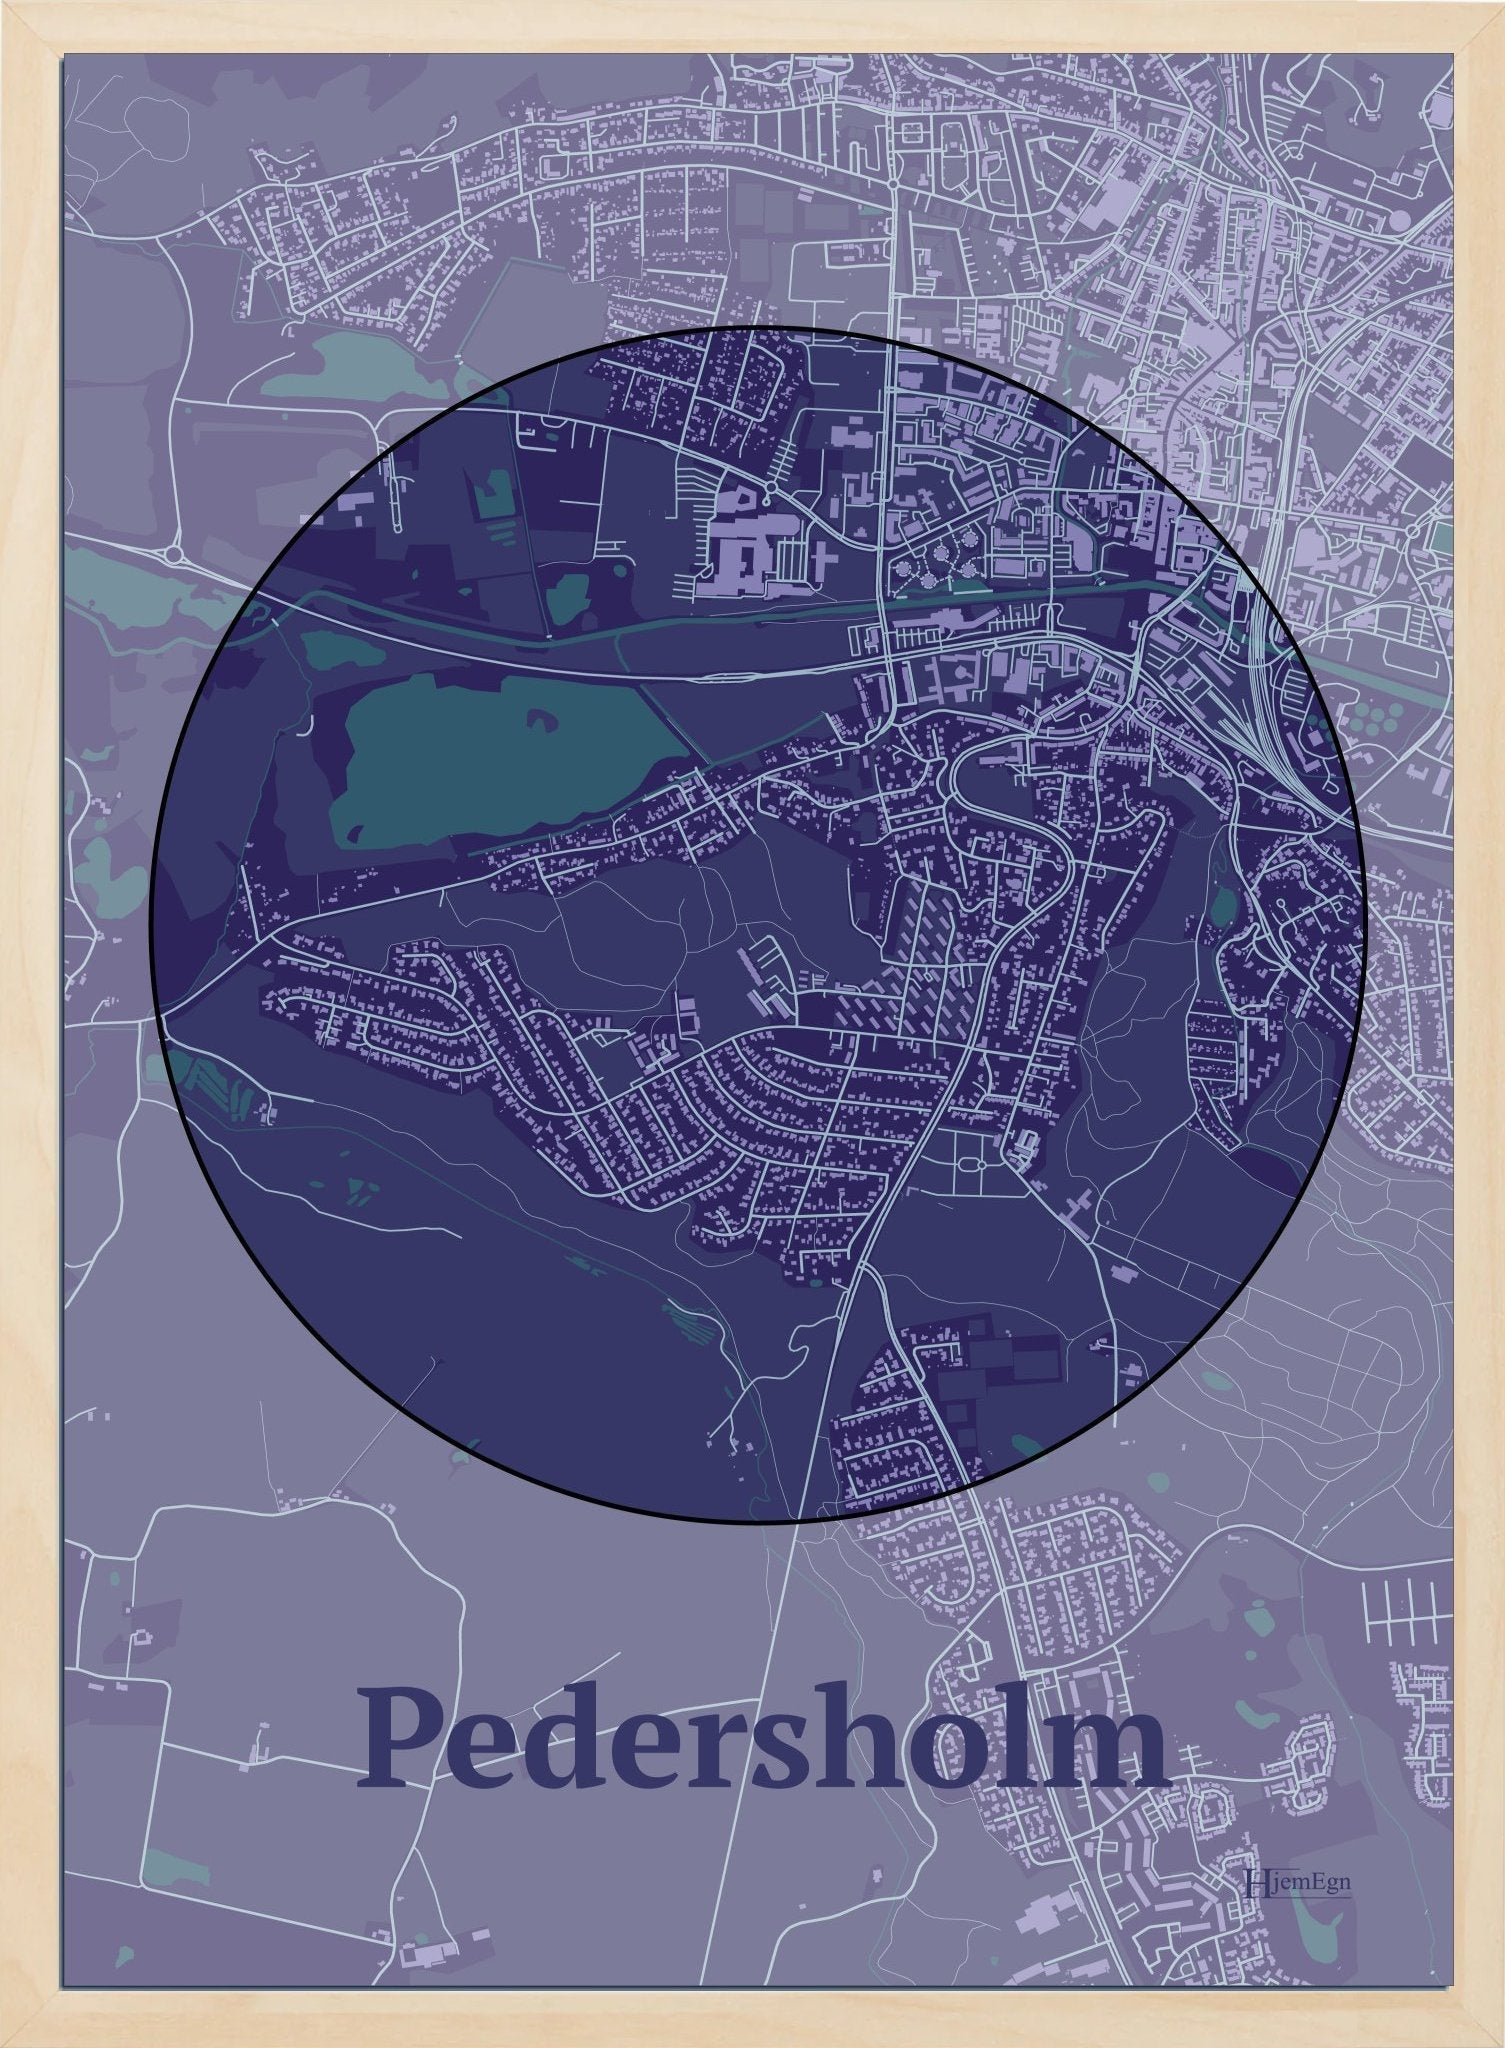 Pedersholm plakat i farve mørk lilla og HjemEgn.dk design centrum. Design bykort for Pedersholm